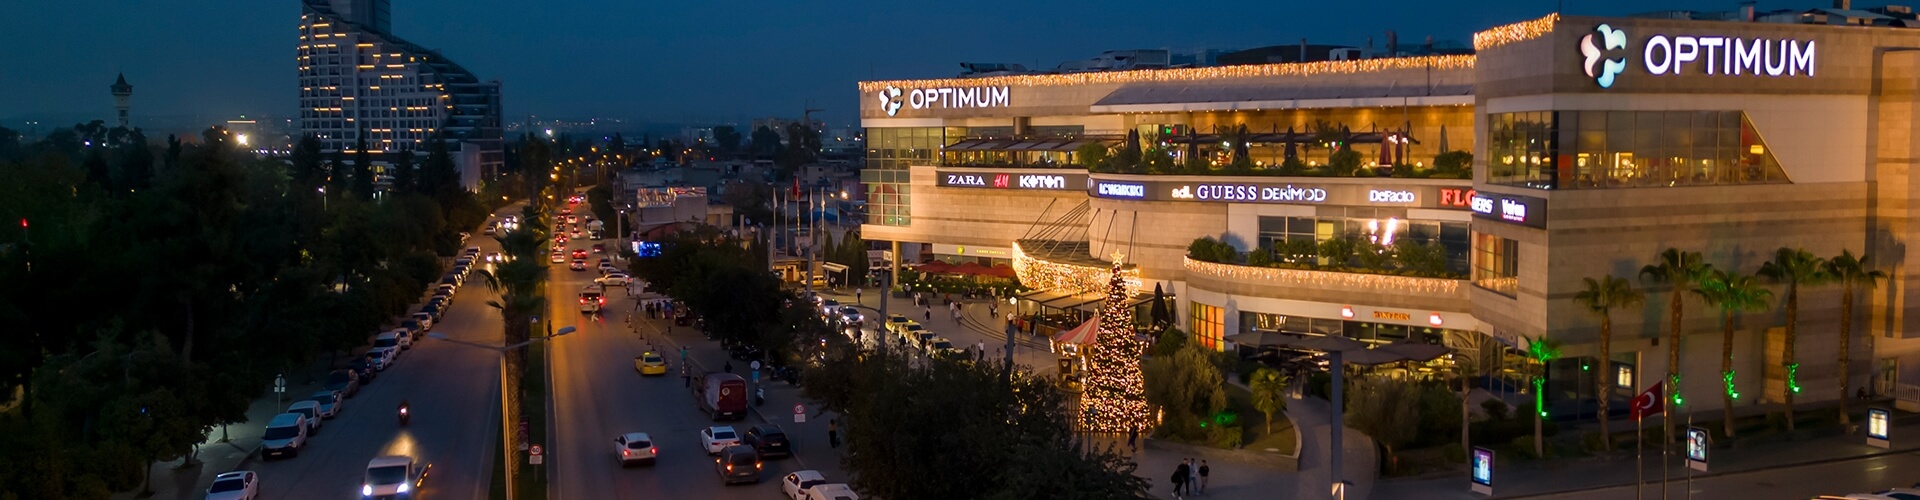 Adana Optimum Alışveriş Merkezi - İletişim